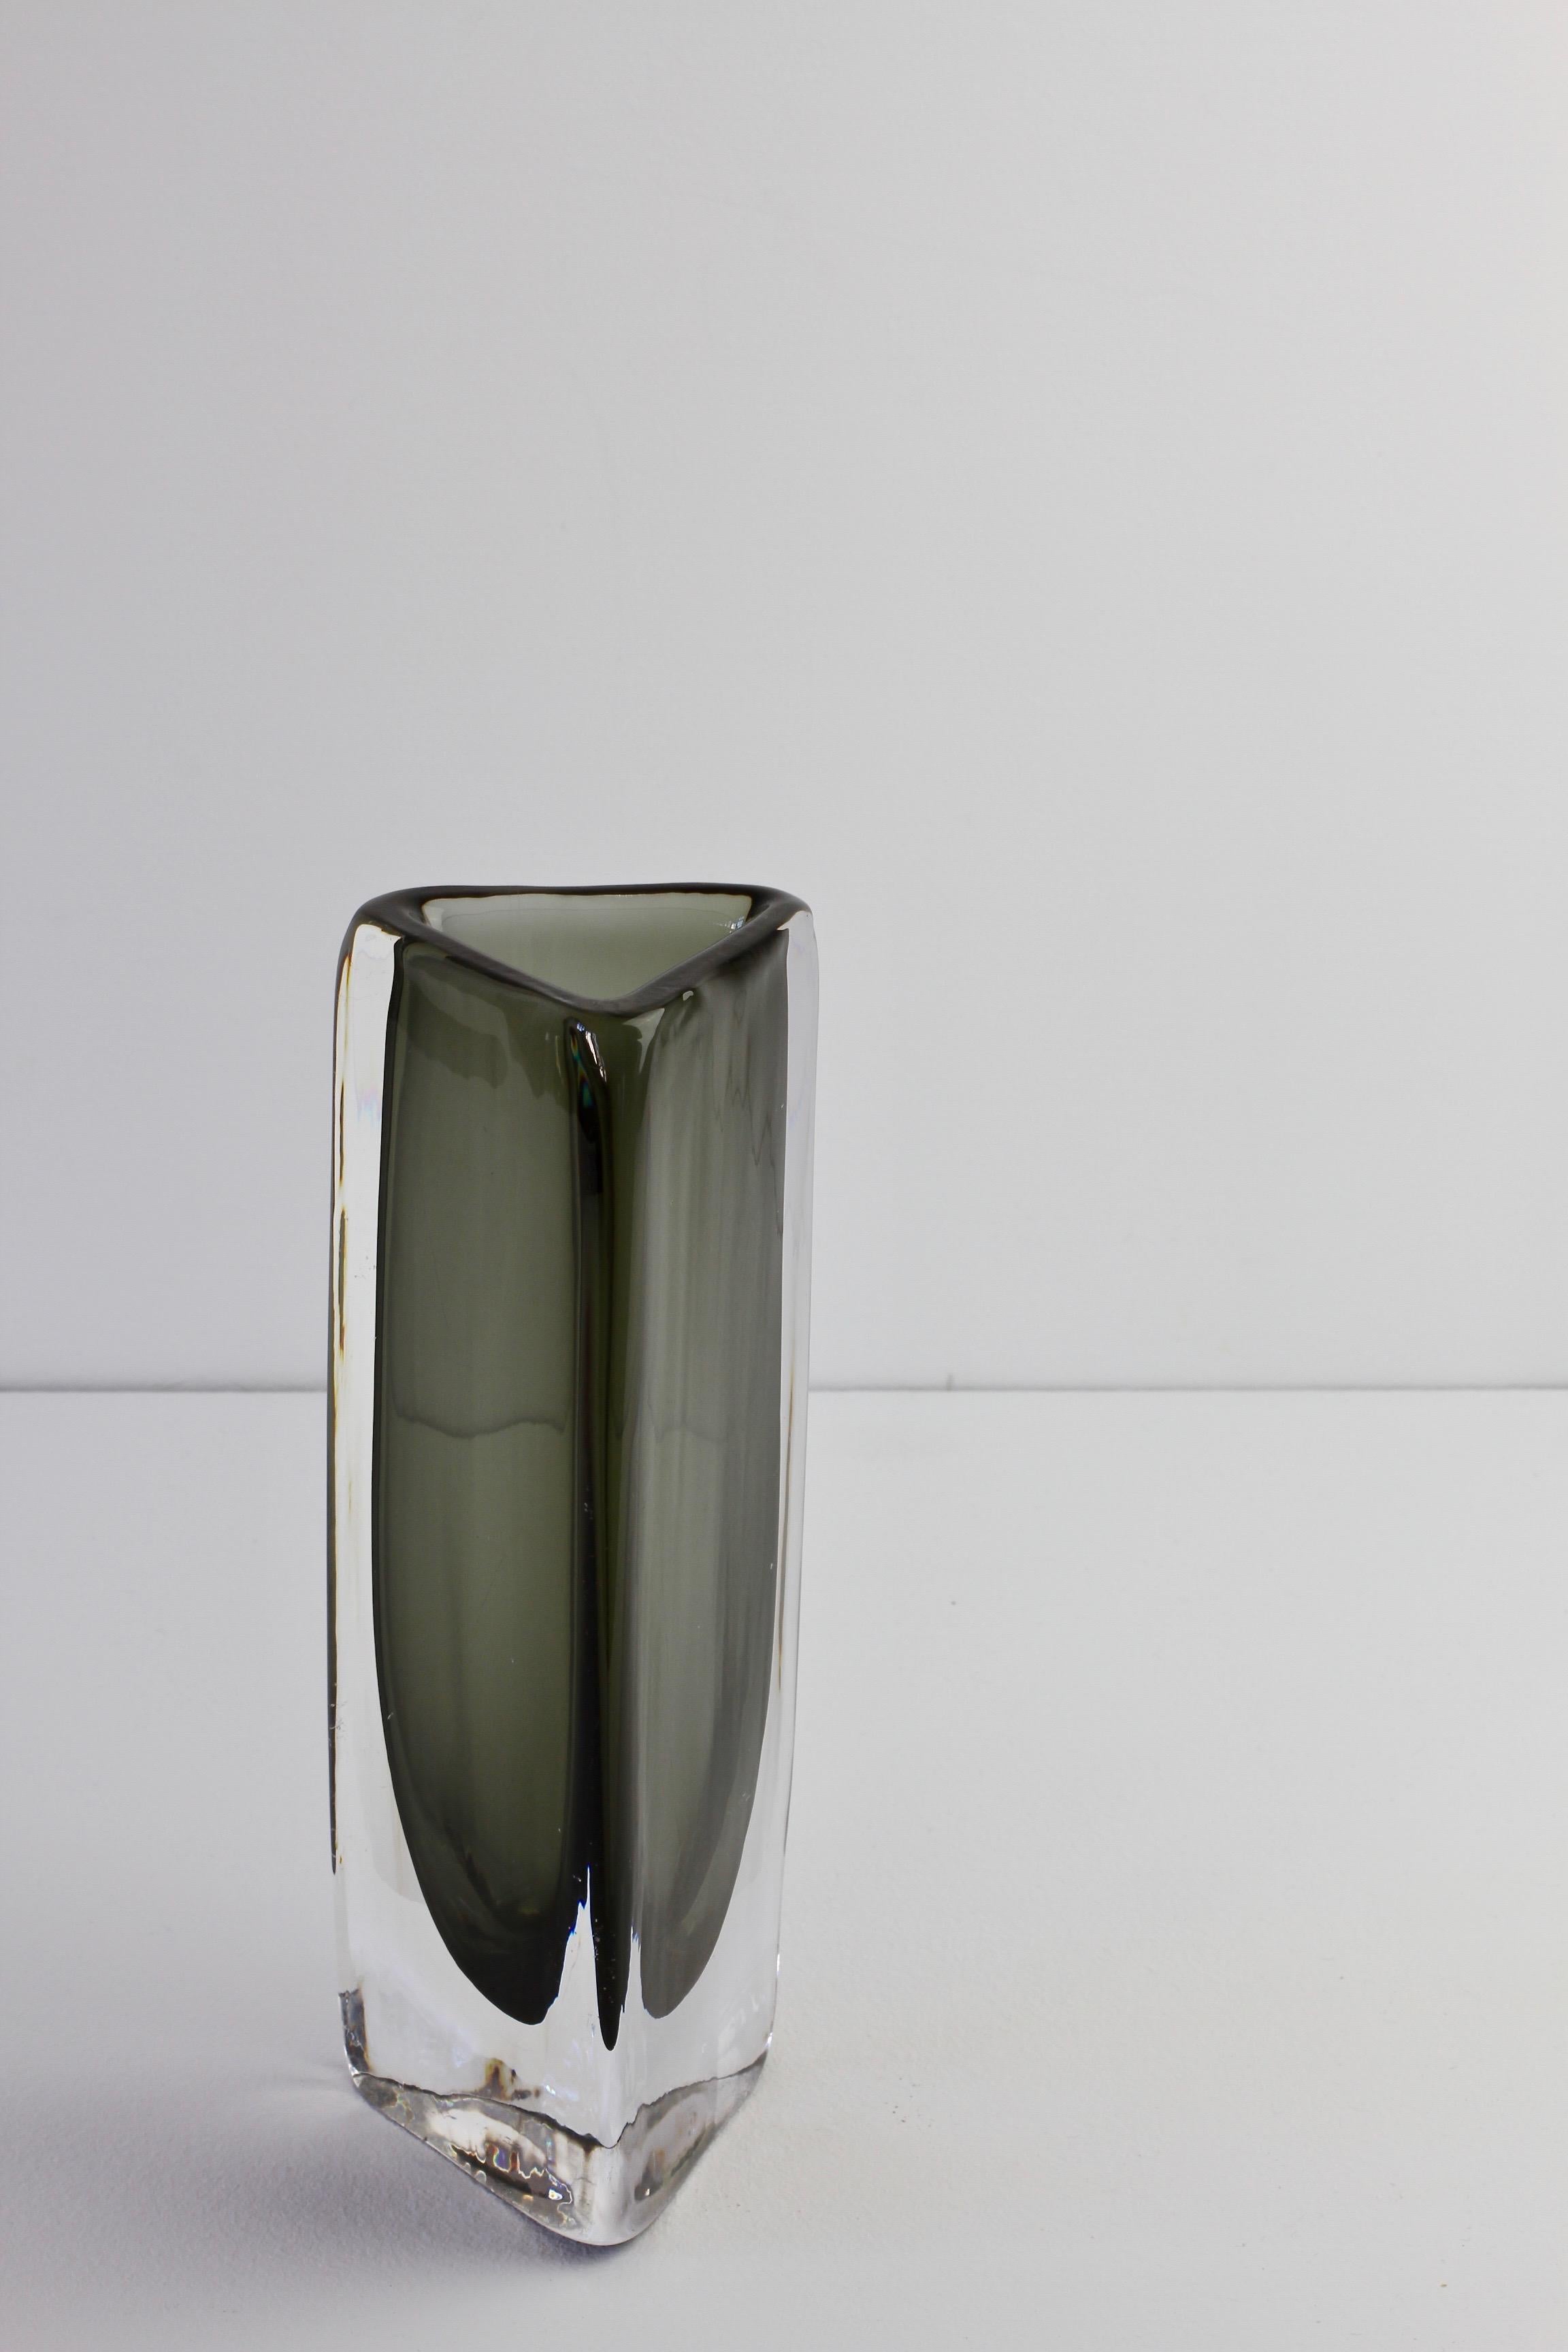 Tall 1950s Dark Toned Sommerso Vase Signed Nils Landberg for Orrefors Glass For Sale 7